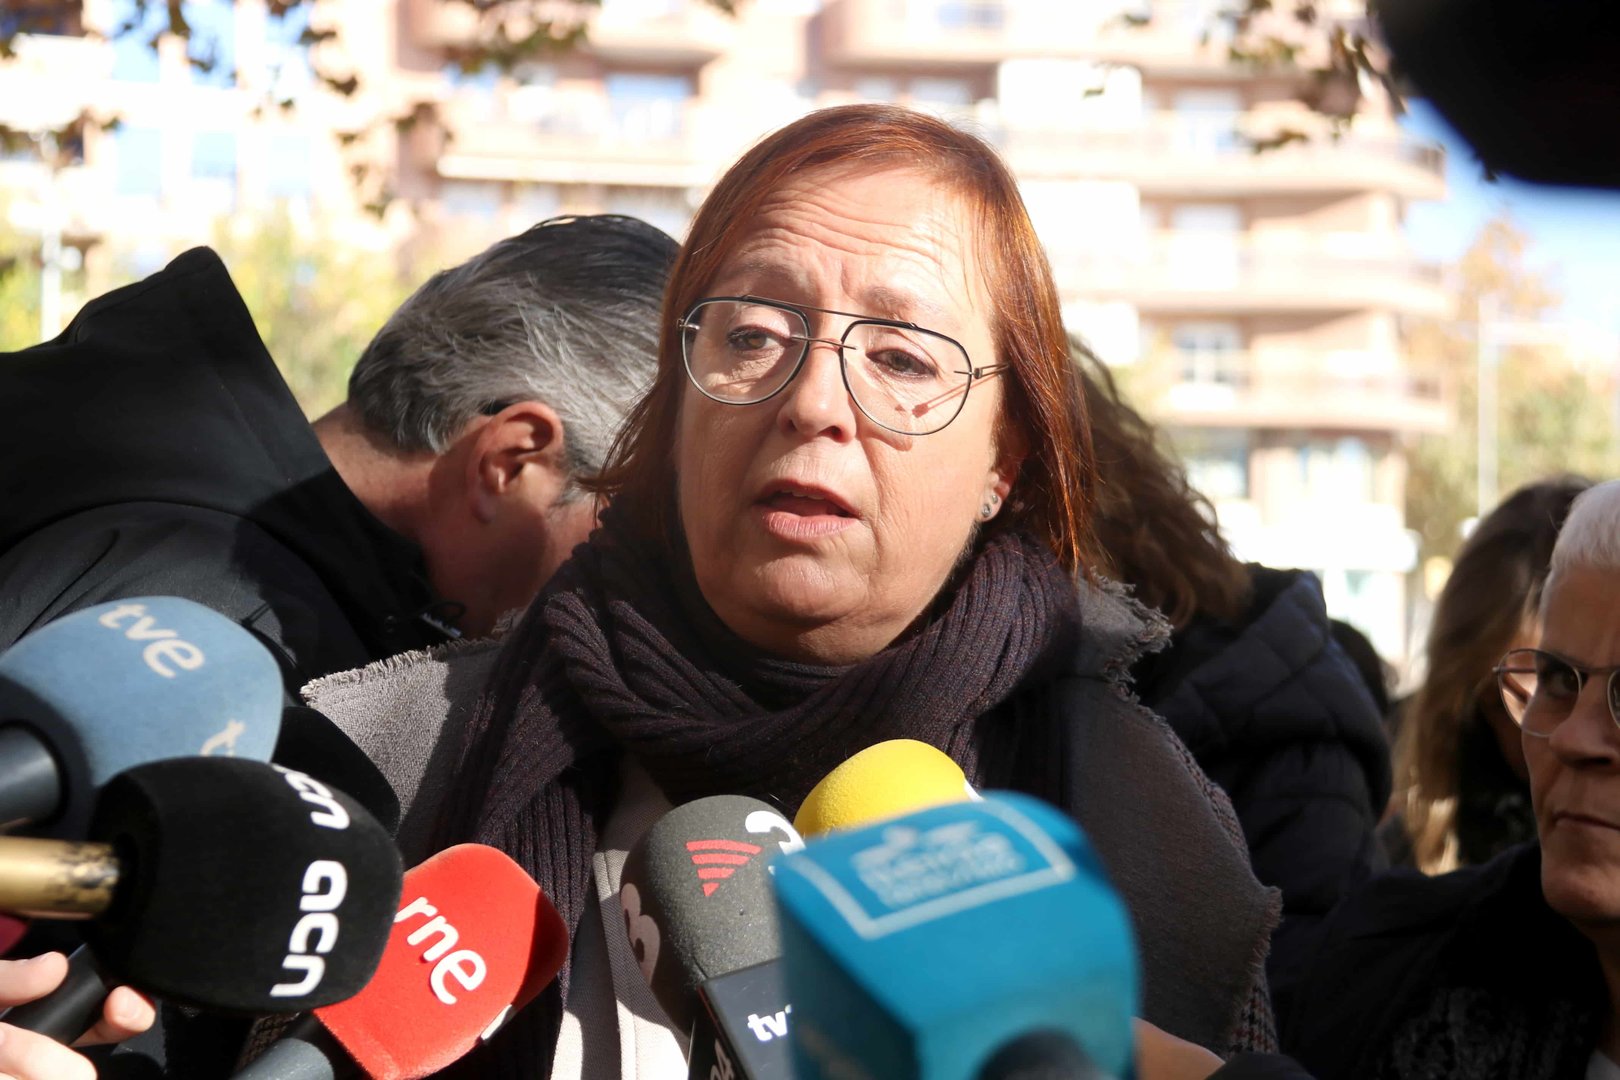 La delegada del Govern a Lleida, Montse Bergés, durant l'atenció als mitjans de comunicació
Foto: Ignasi Gómez